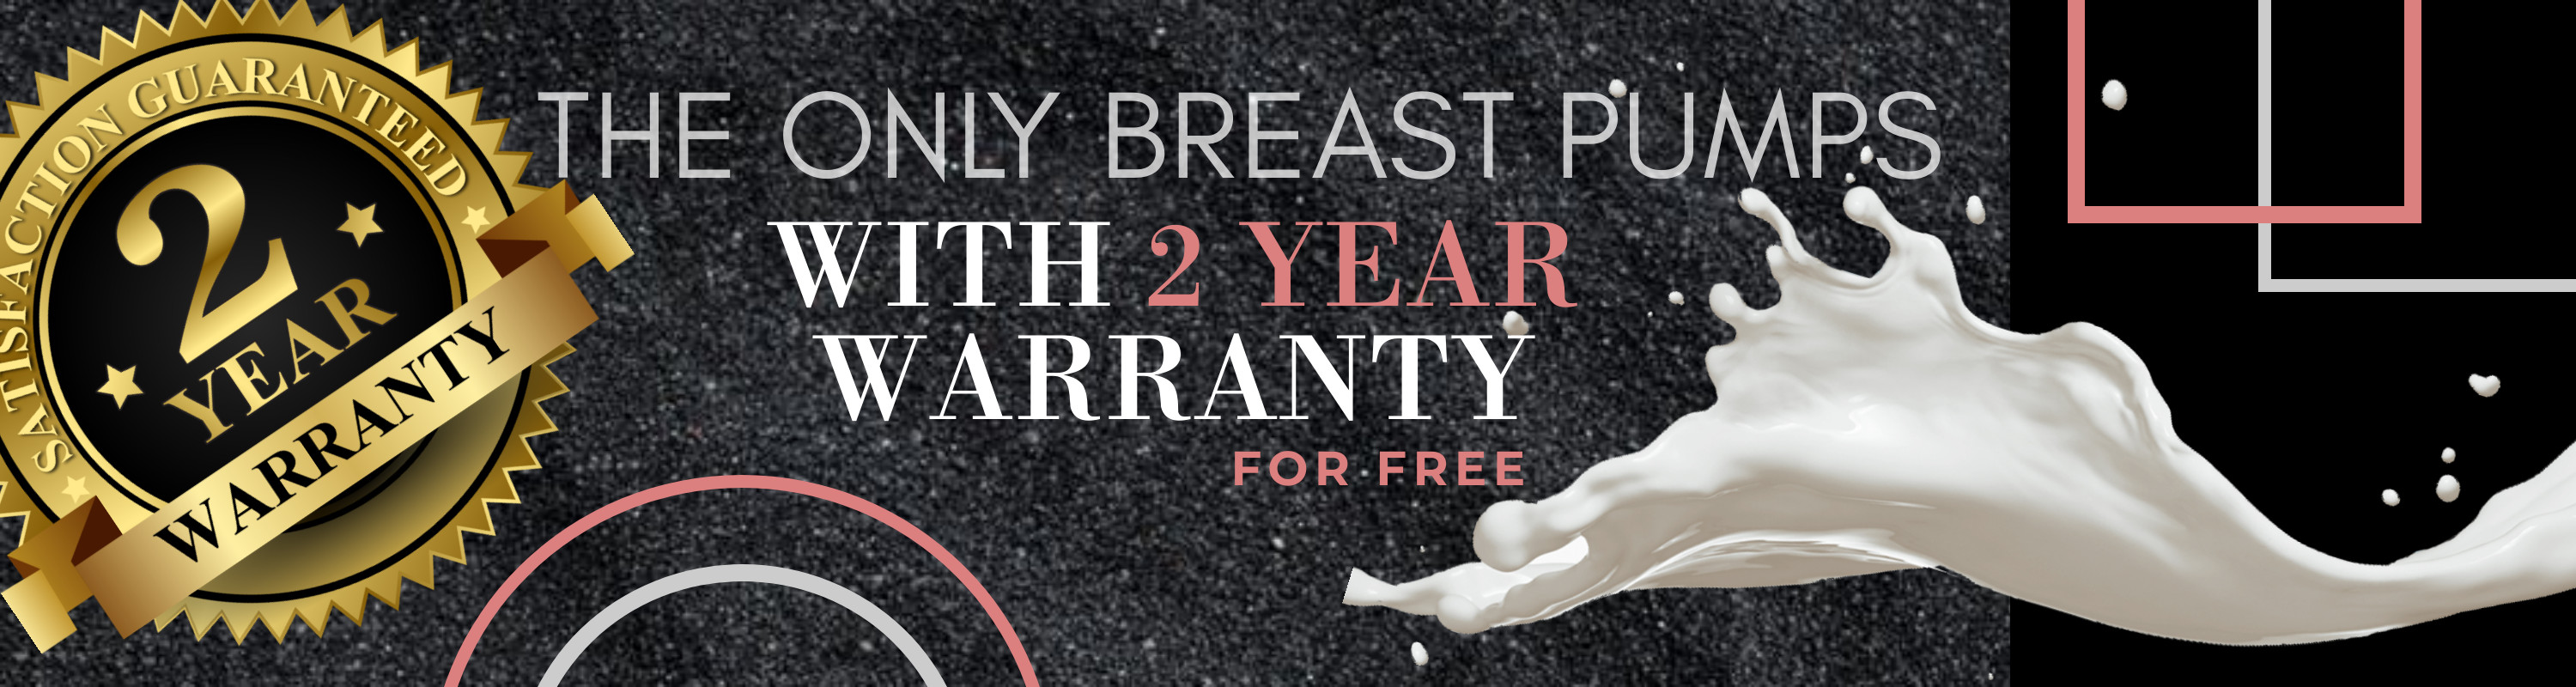 spectra breast pump 2 year warranty